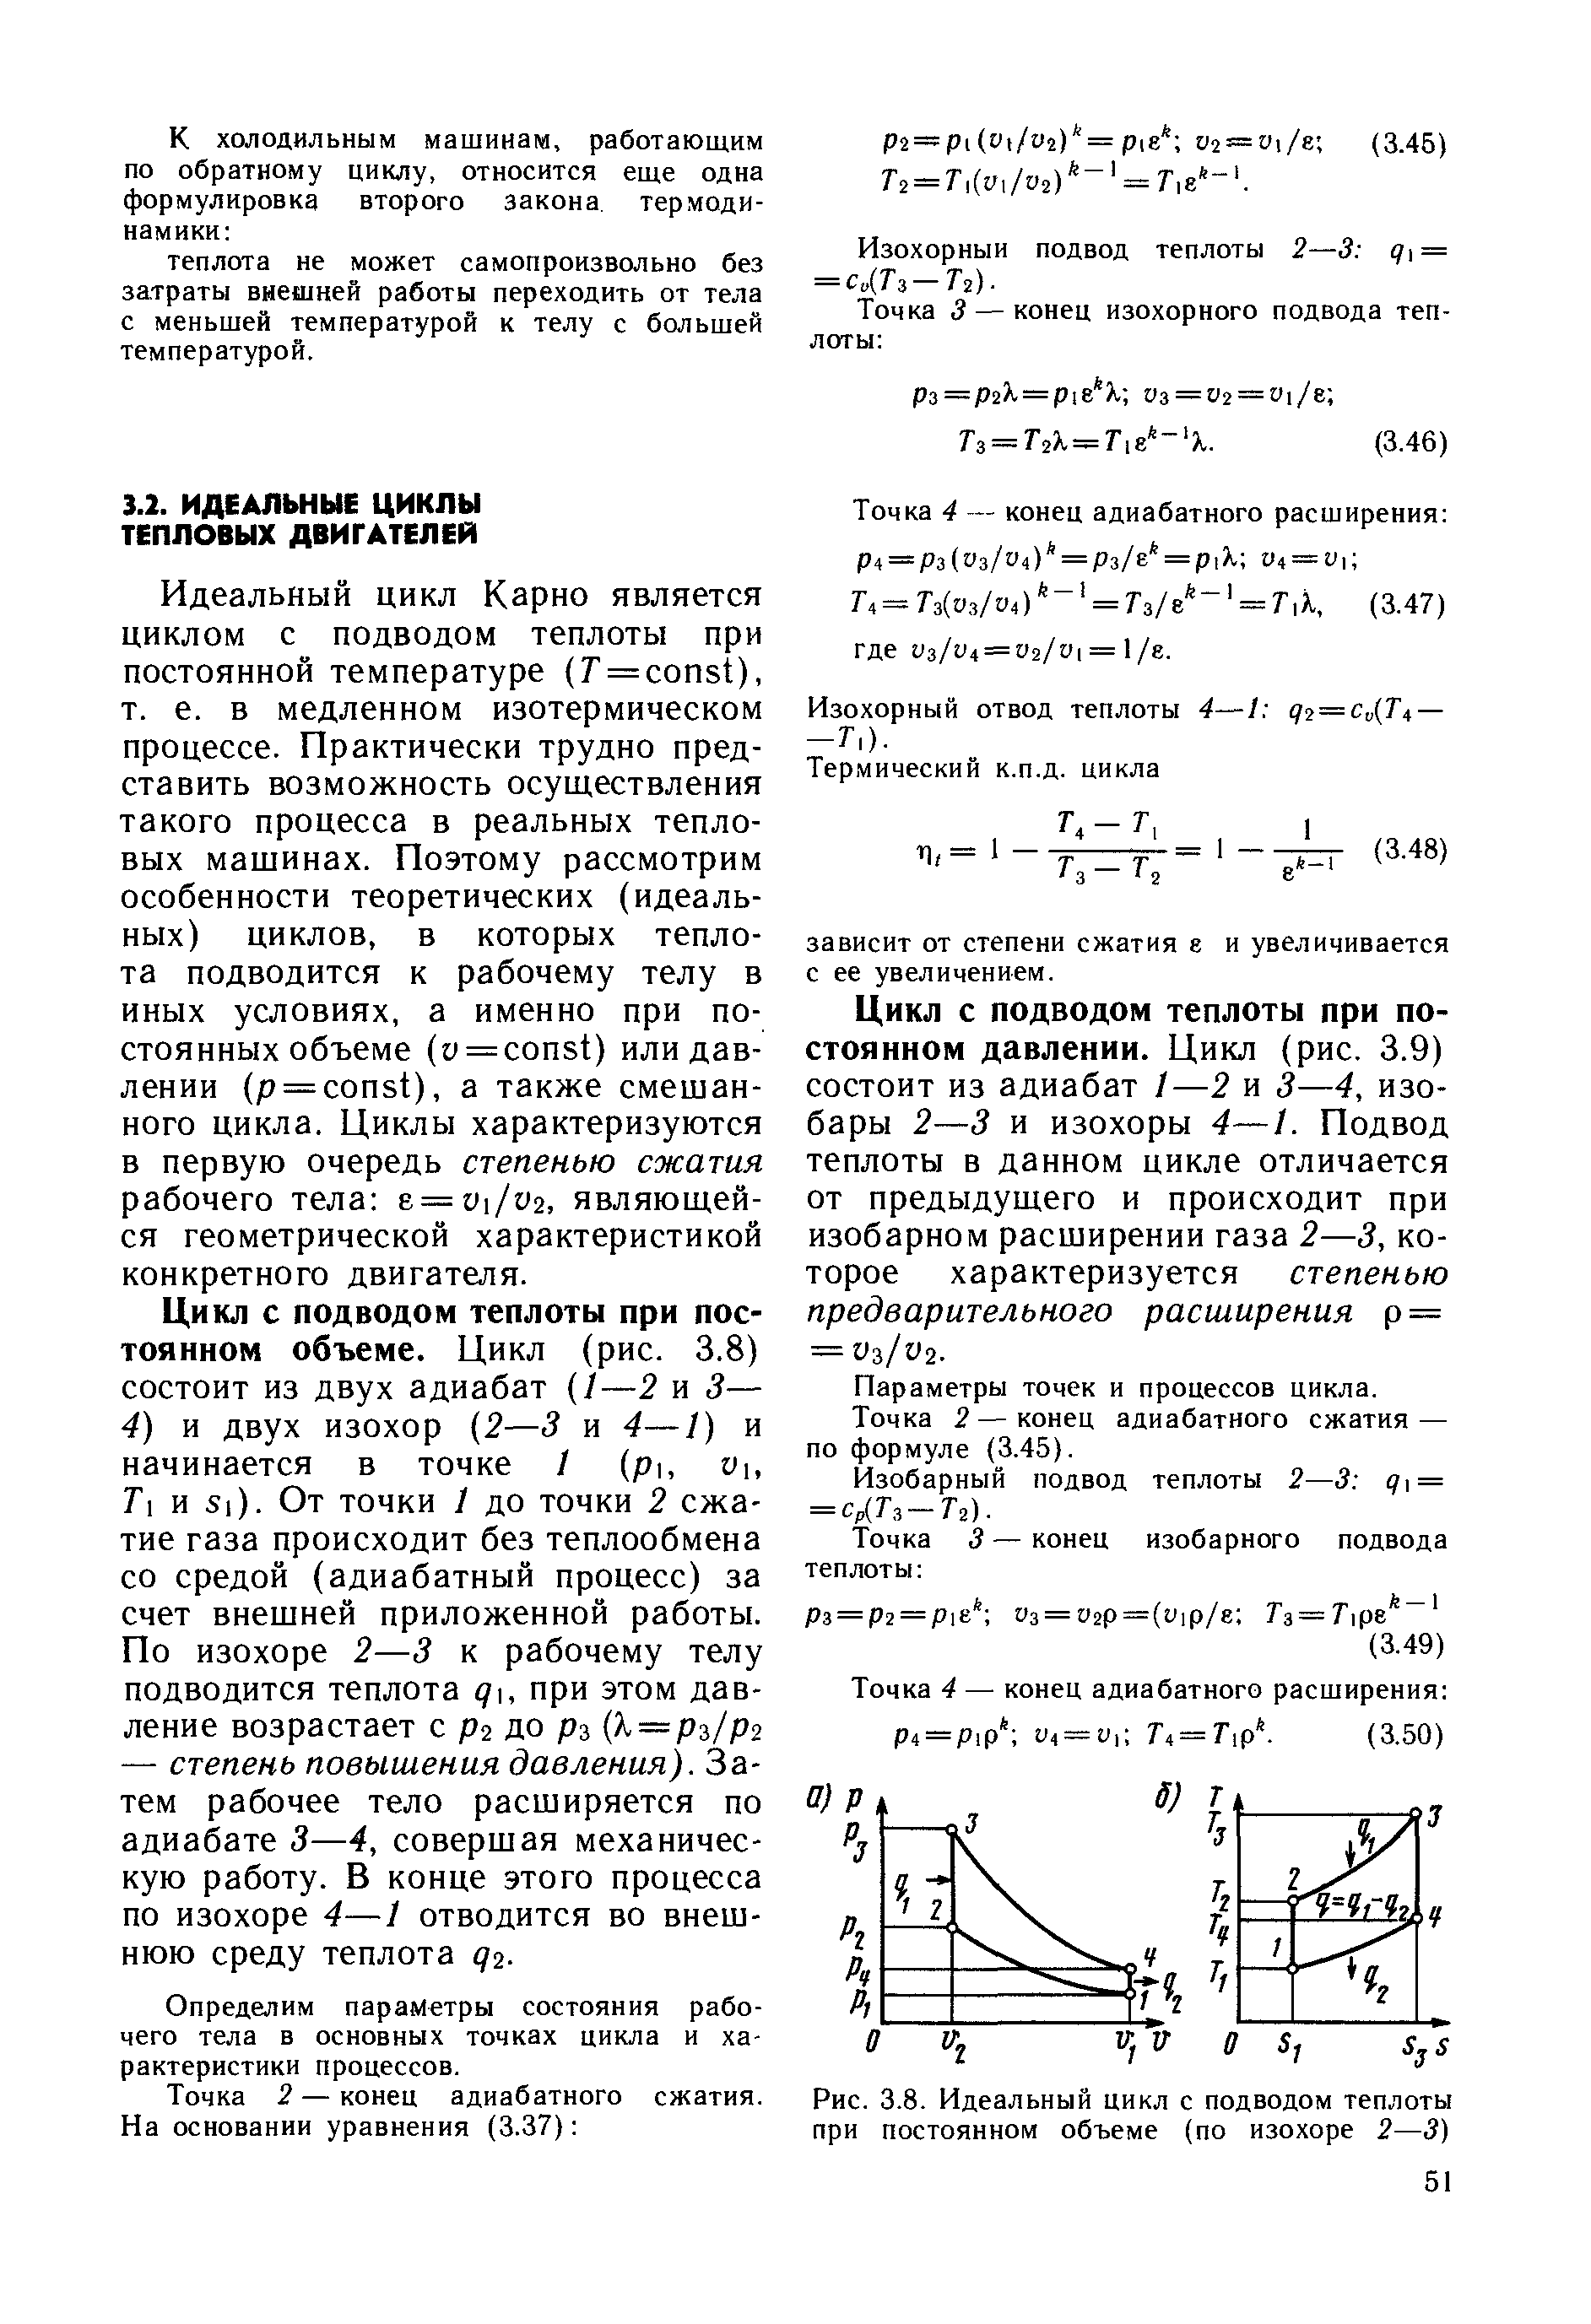 Рис. 3.8. Идеальный цикл с подводом теплоты при постоянном объеме (по изохоре 2—3)
